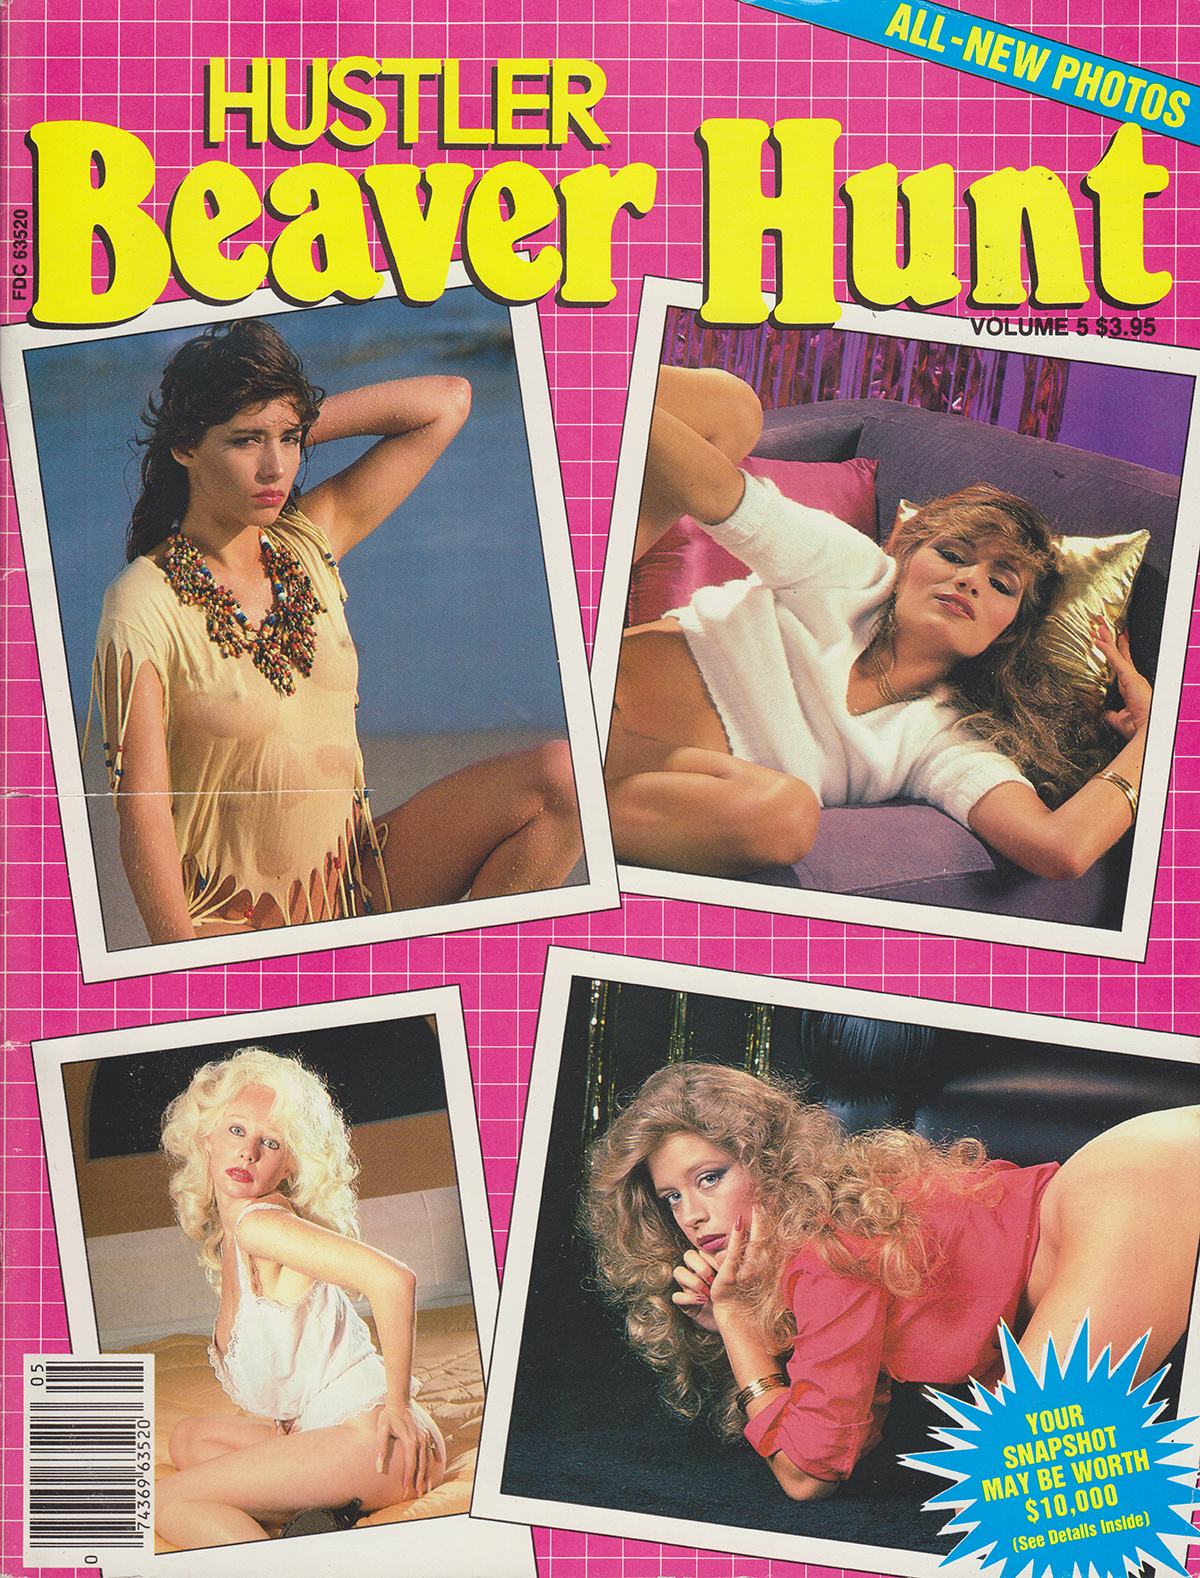 The Best of Beaver Hunt 5.